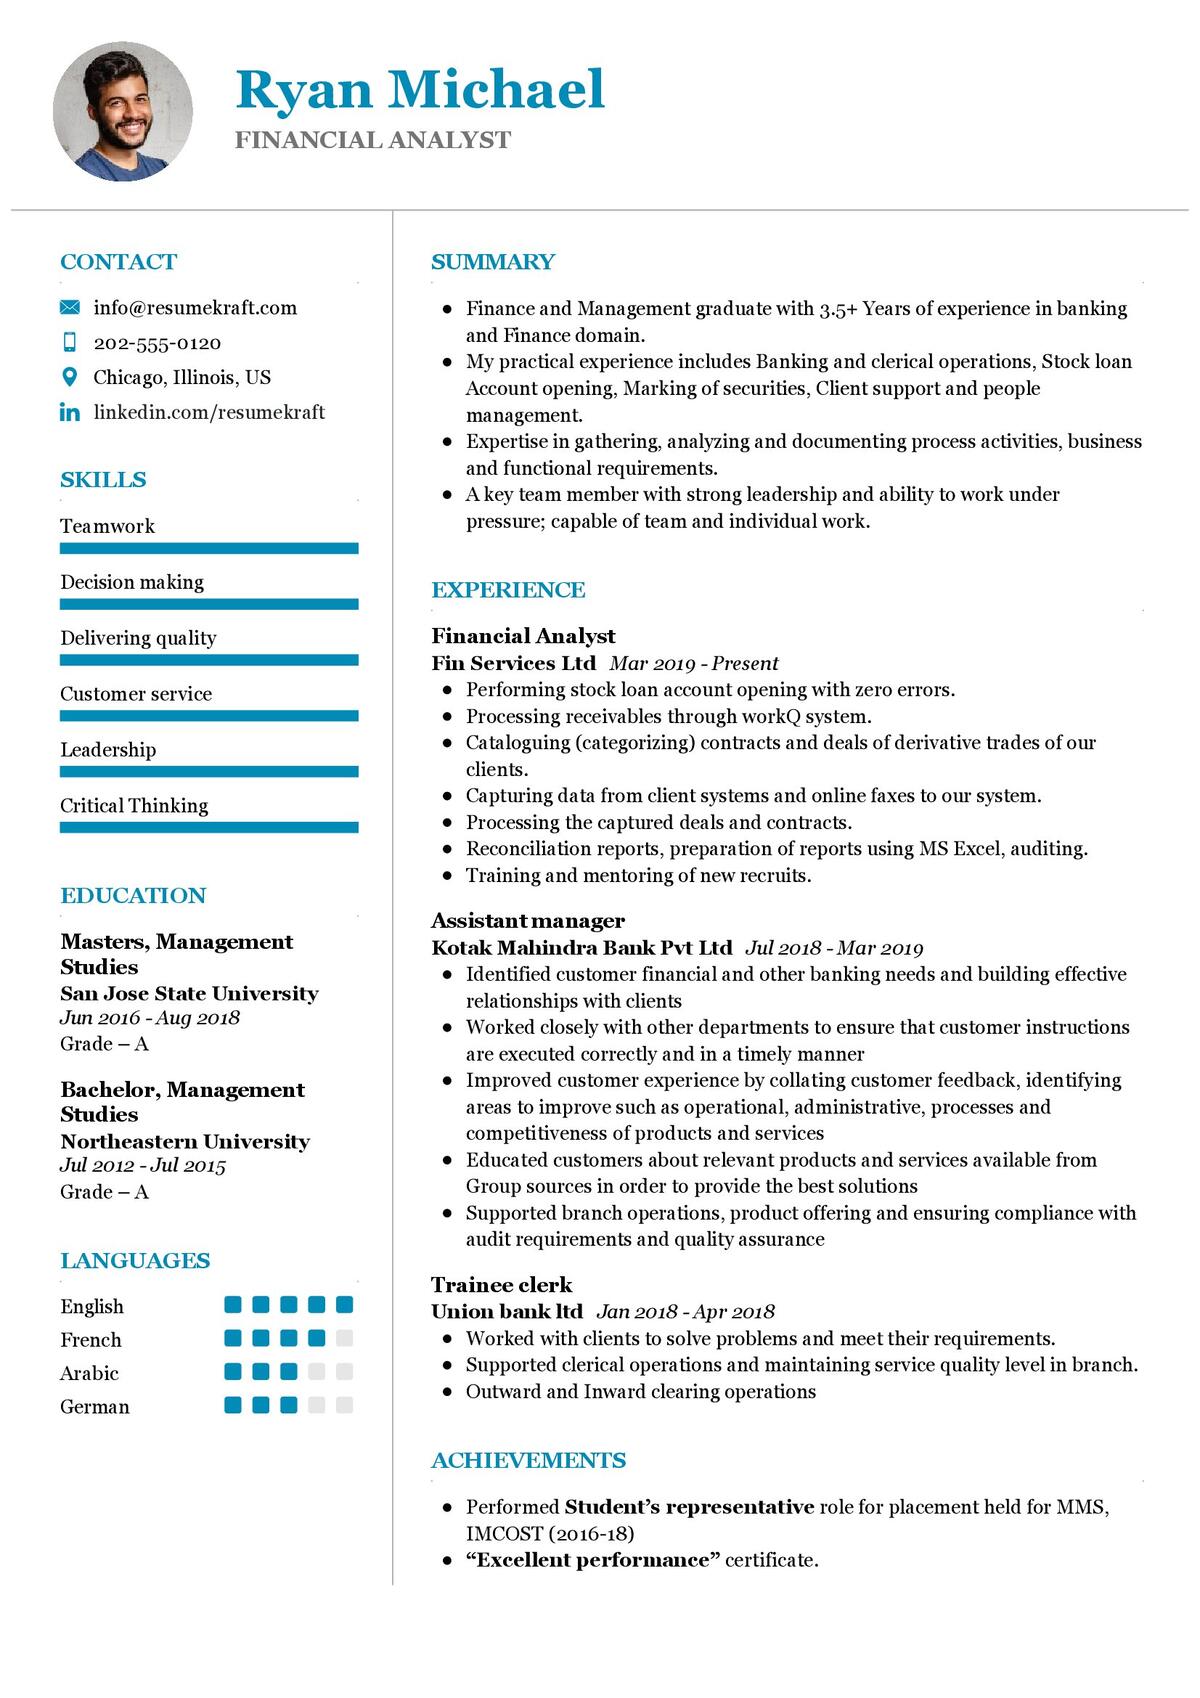 Financial Analyst CV Sample in 2024 ResumeKraft